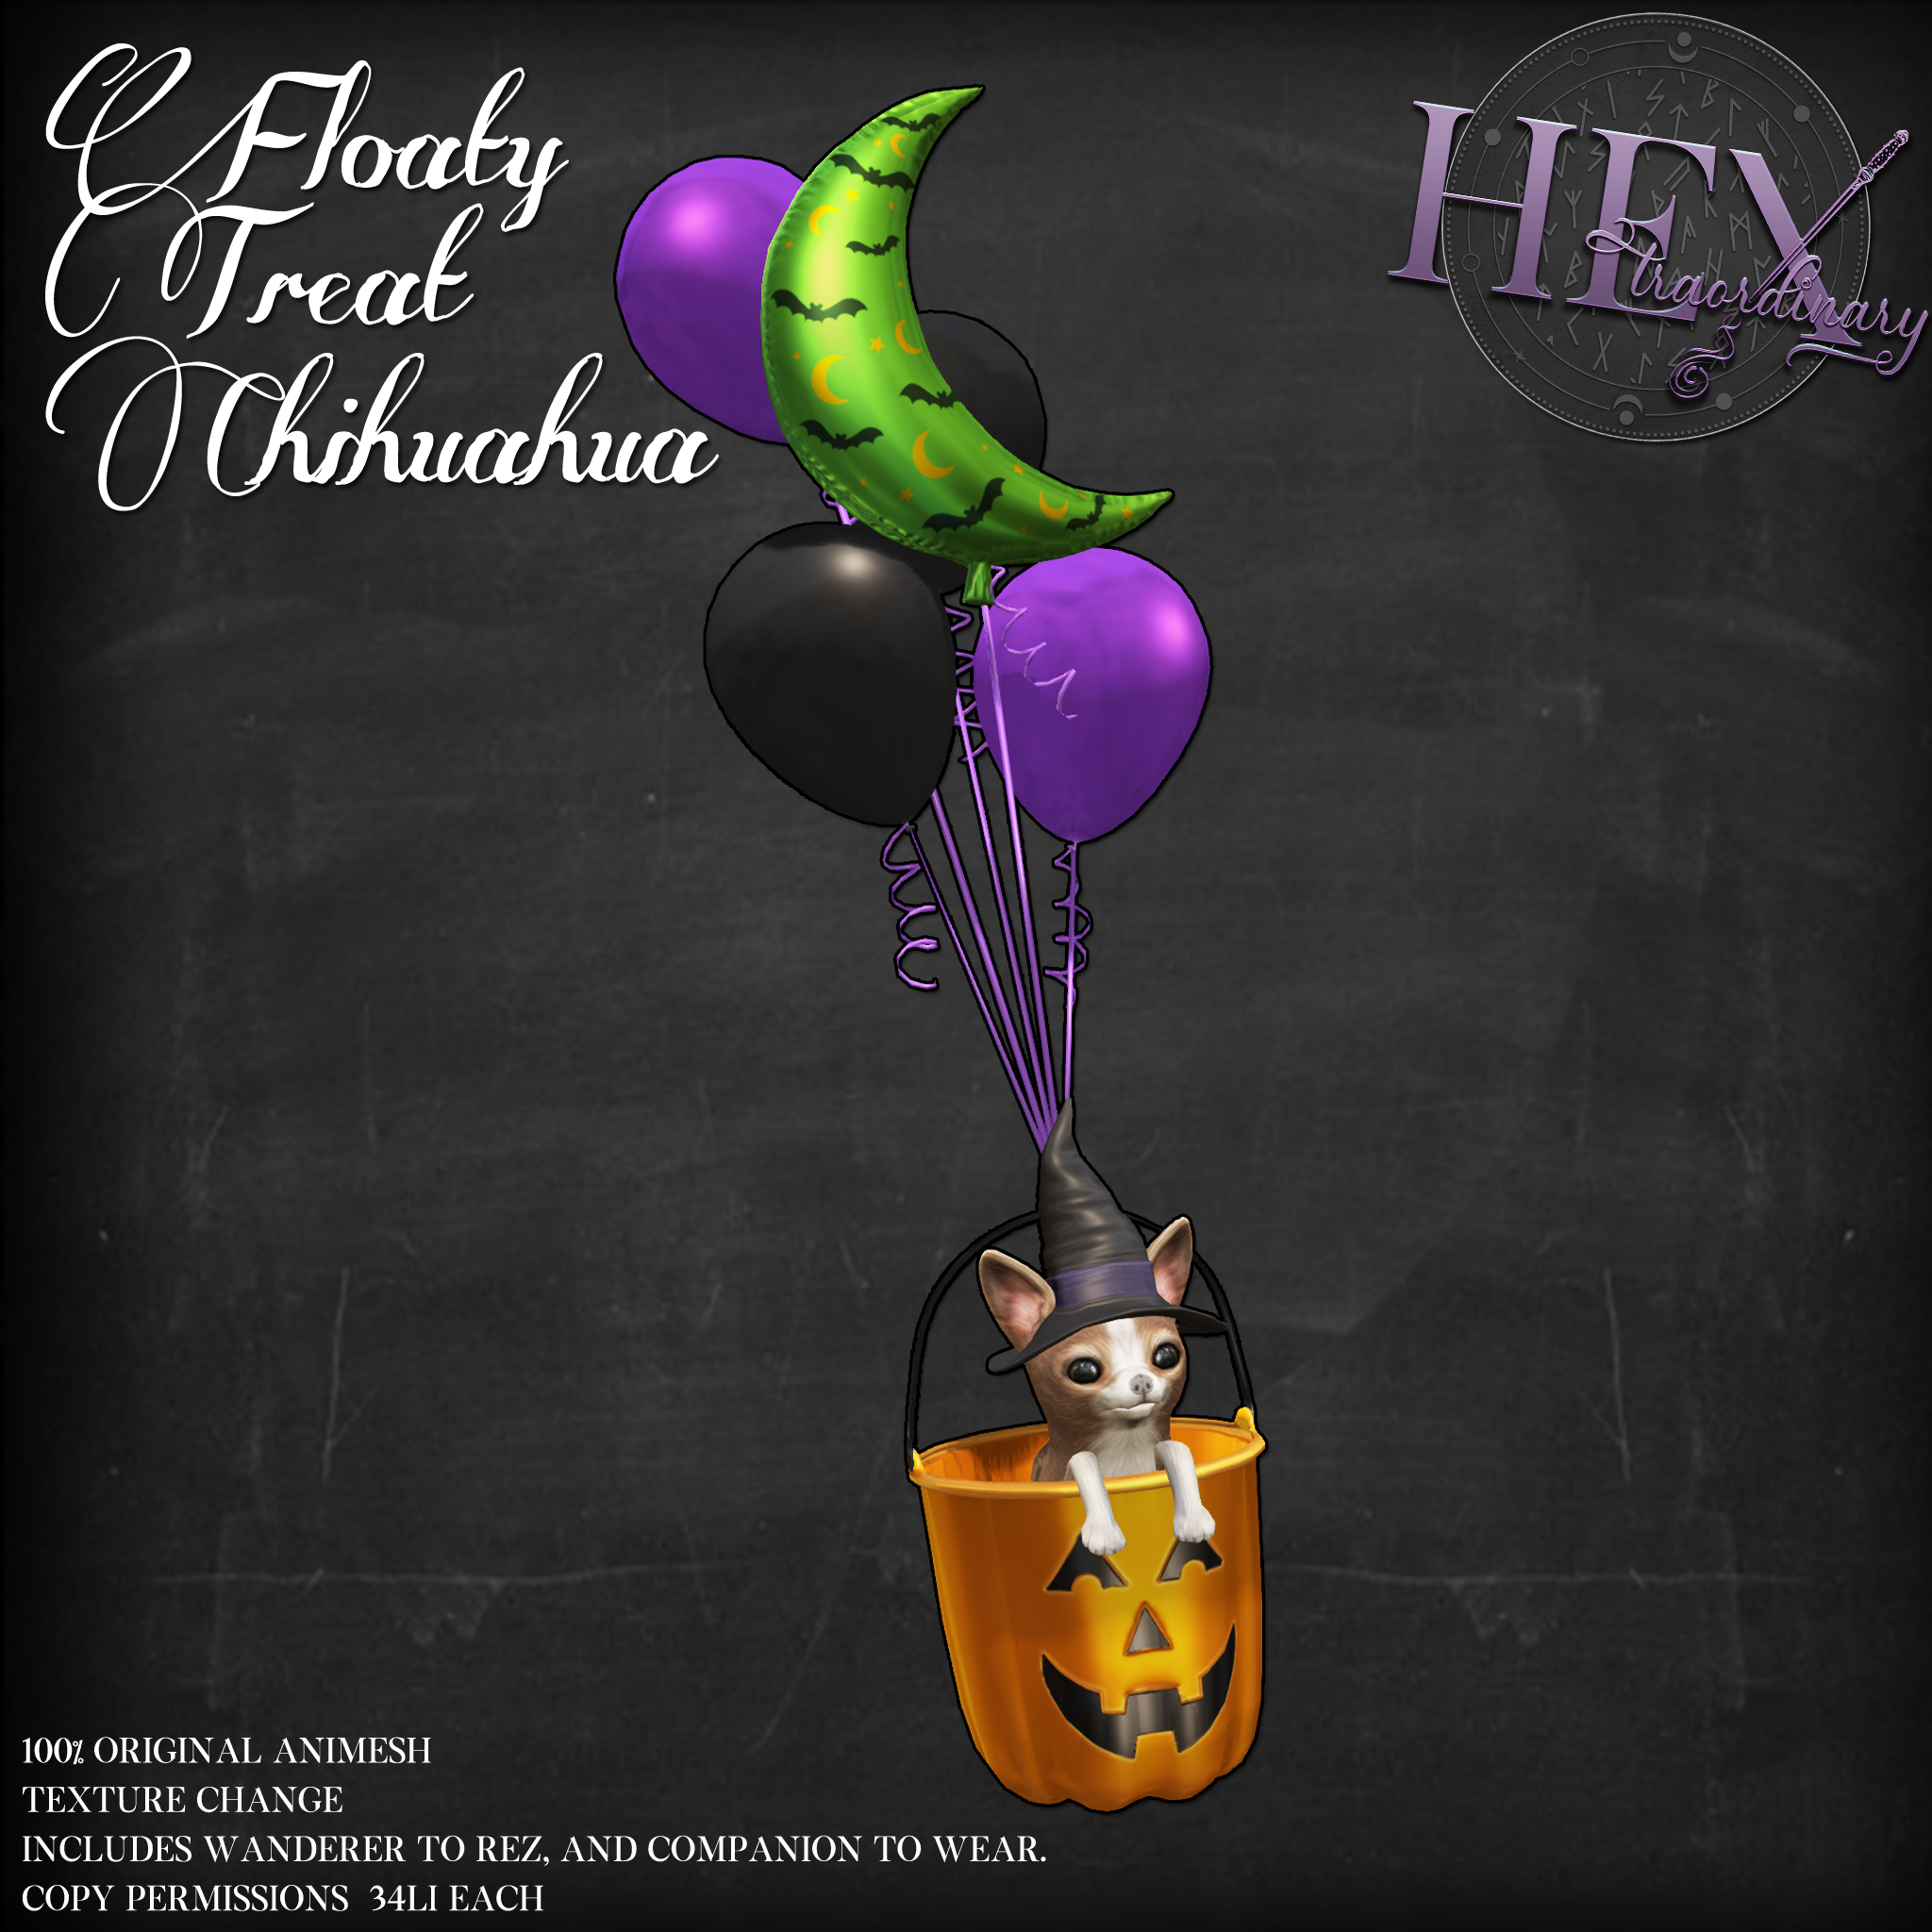 HEXtraordinary – Floaty Treat Chihuahua